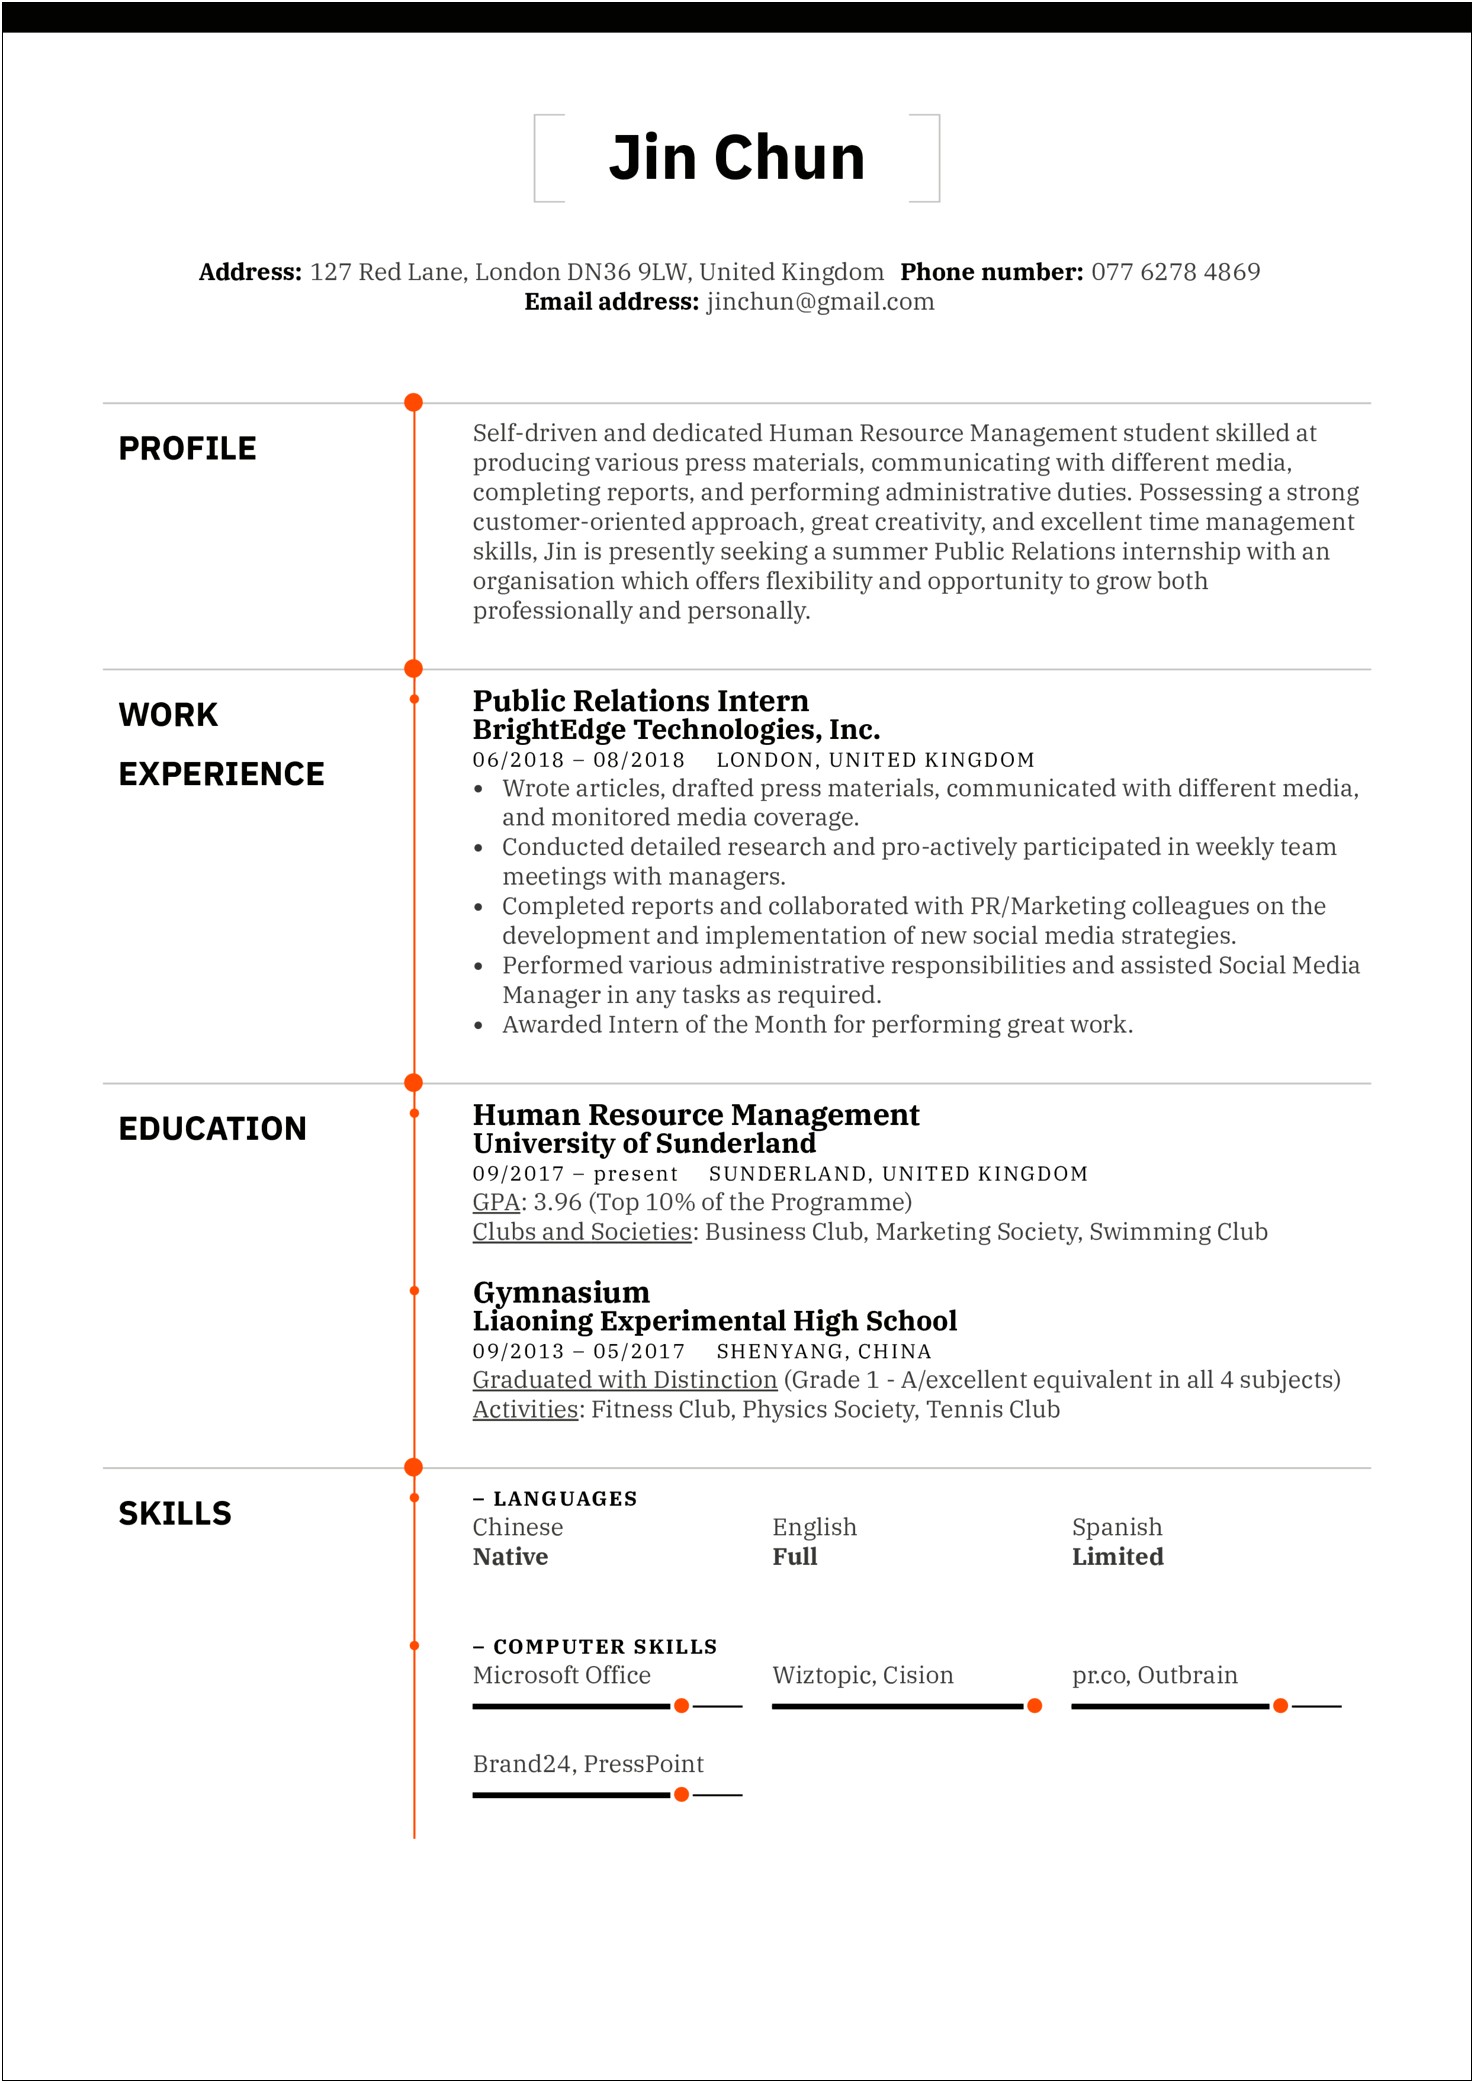 Sample Resume For Social Worker Intern